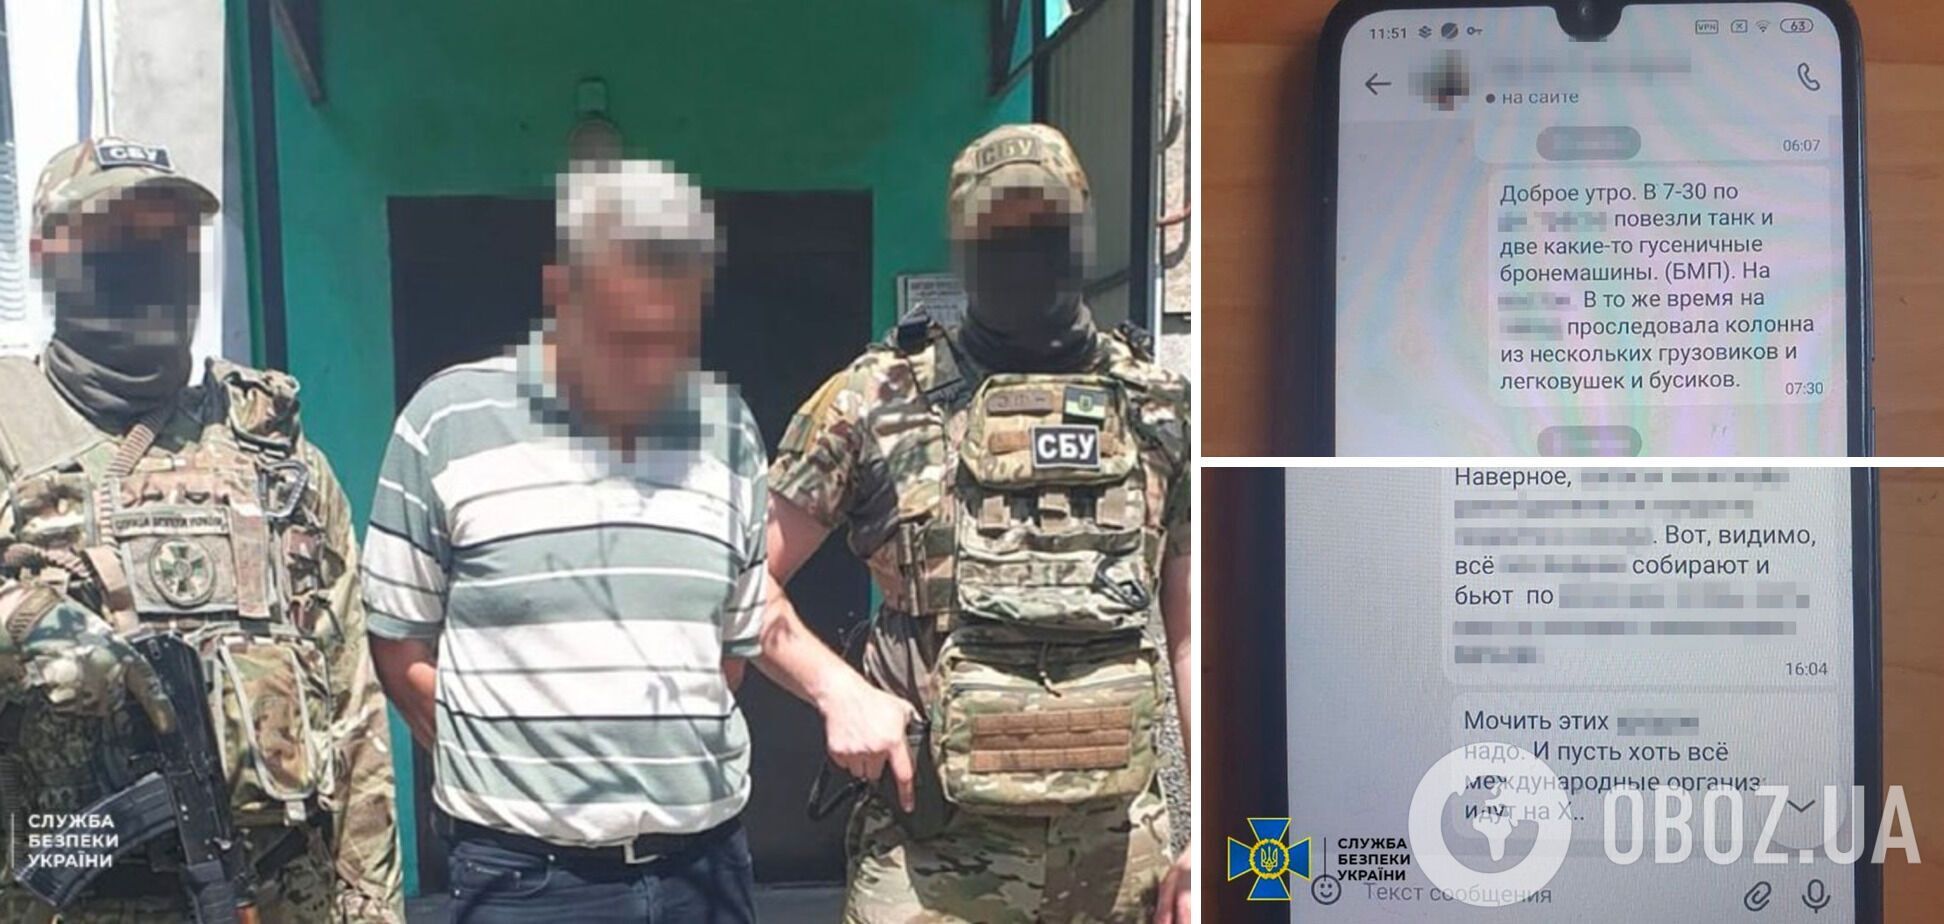 СБУ затримала інформатора РФ, який 'полював' за позиціями української артилерії під Авдіївкою. Фото